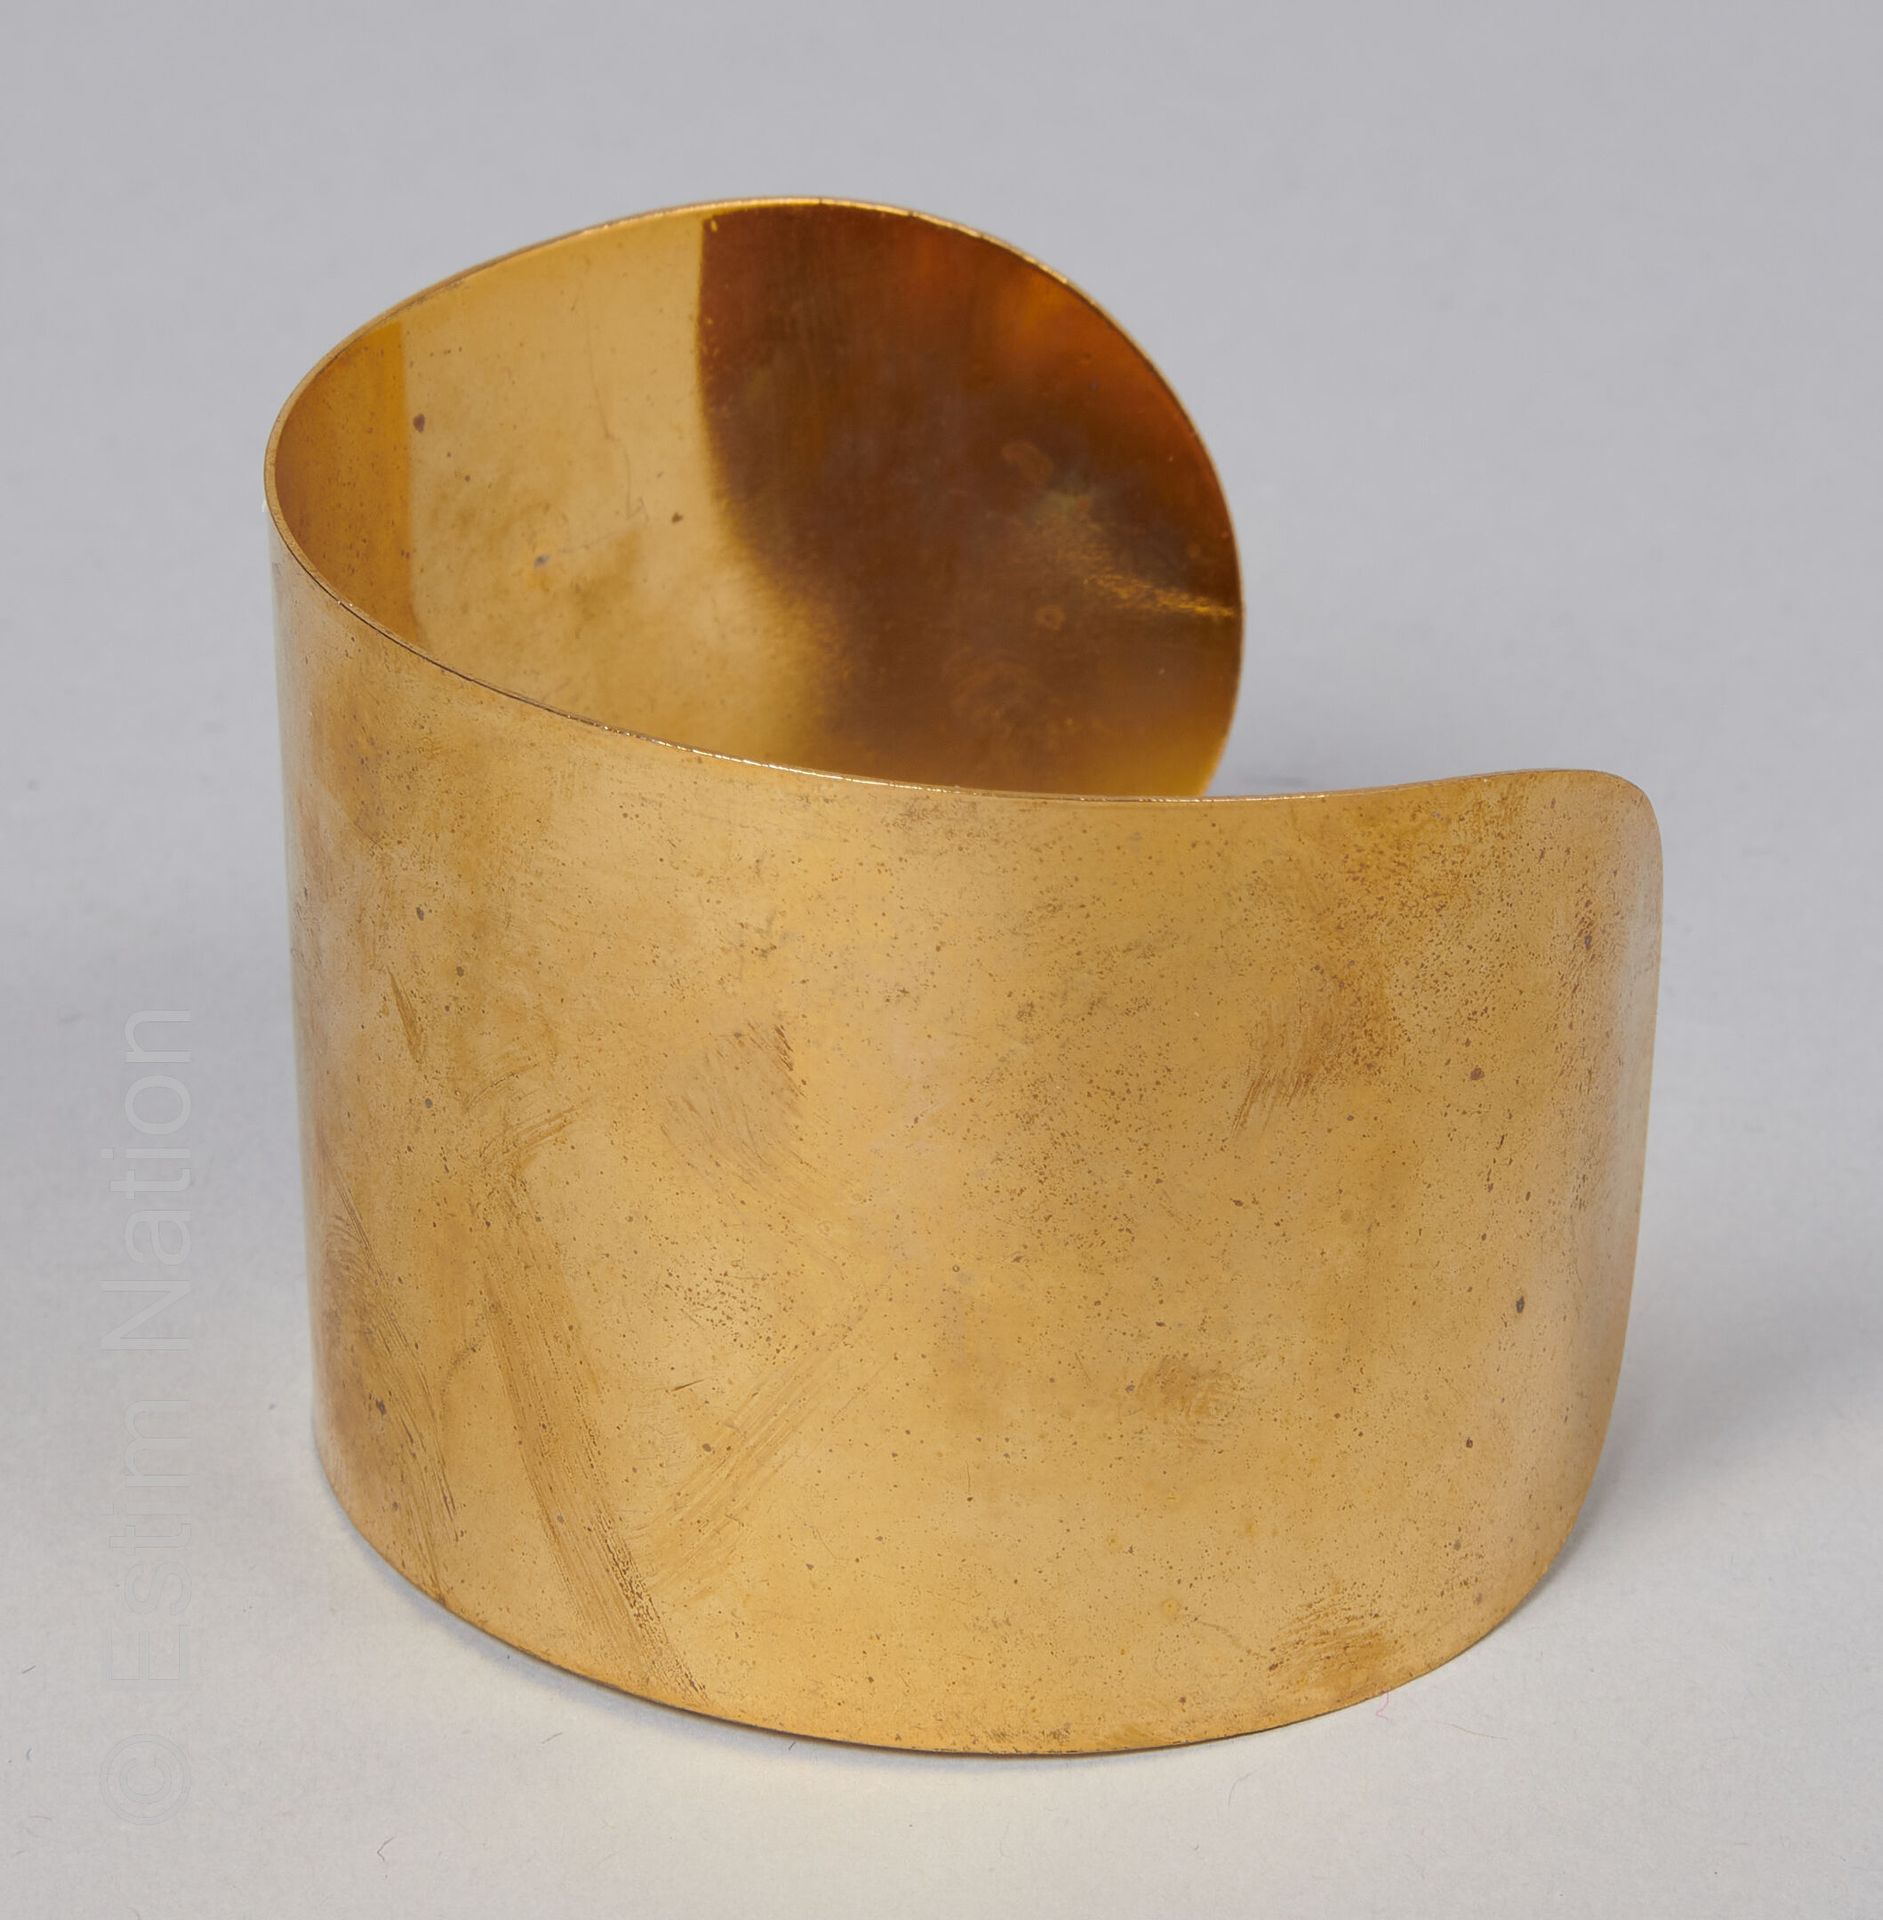 MANCHETTE CUIVRE Manschettenarmband aus Kupfer. 
Breite: 4.5 cm 
(leichte Oxidat&hellip;